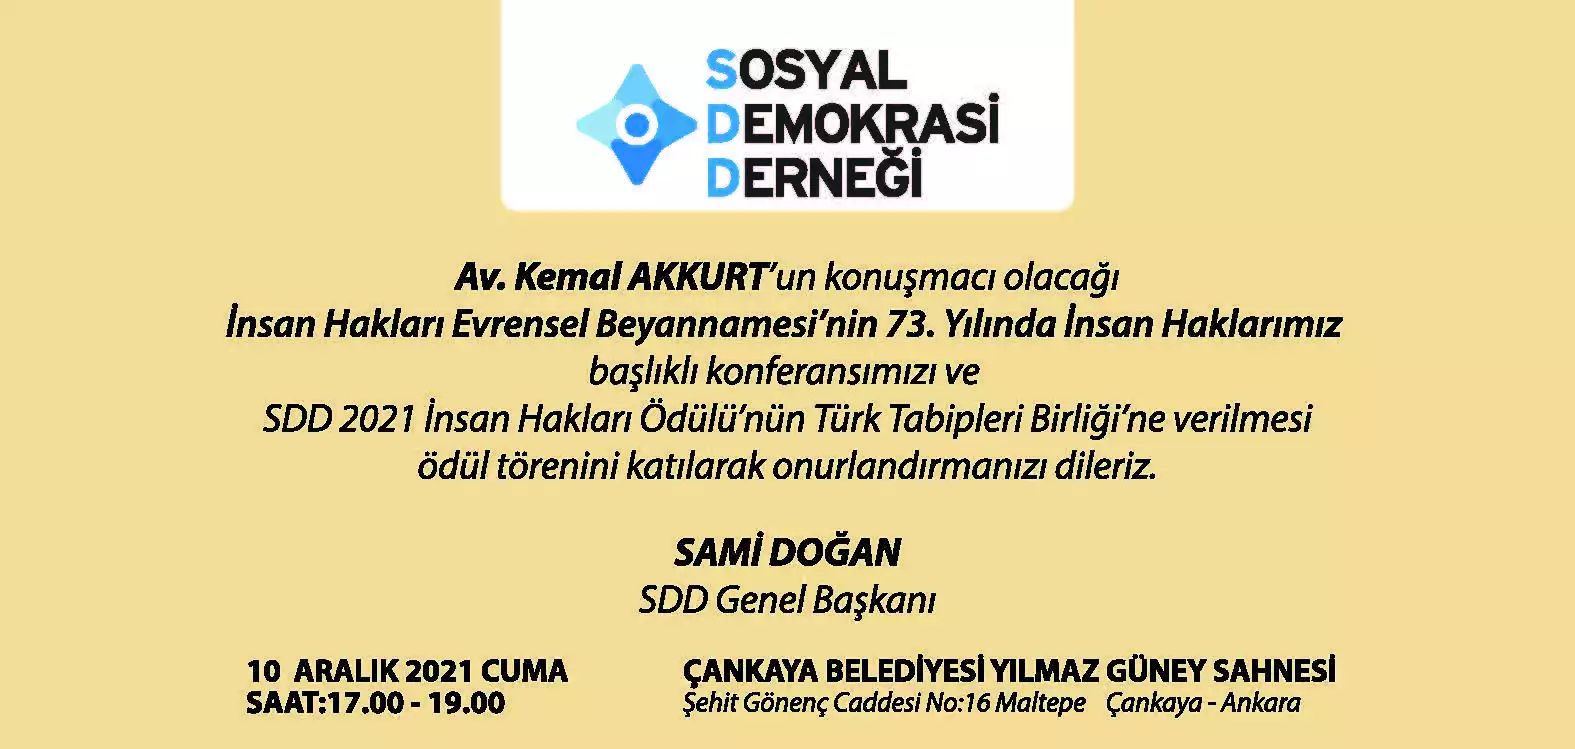 2021 i̇nsan hakları ödülü türk tabipleri birliği'ne veriliyor